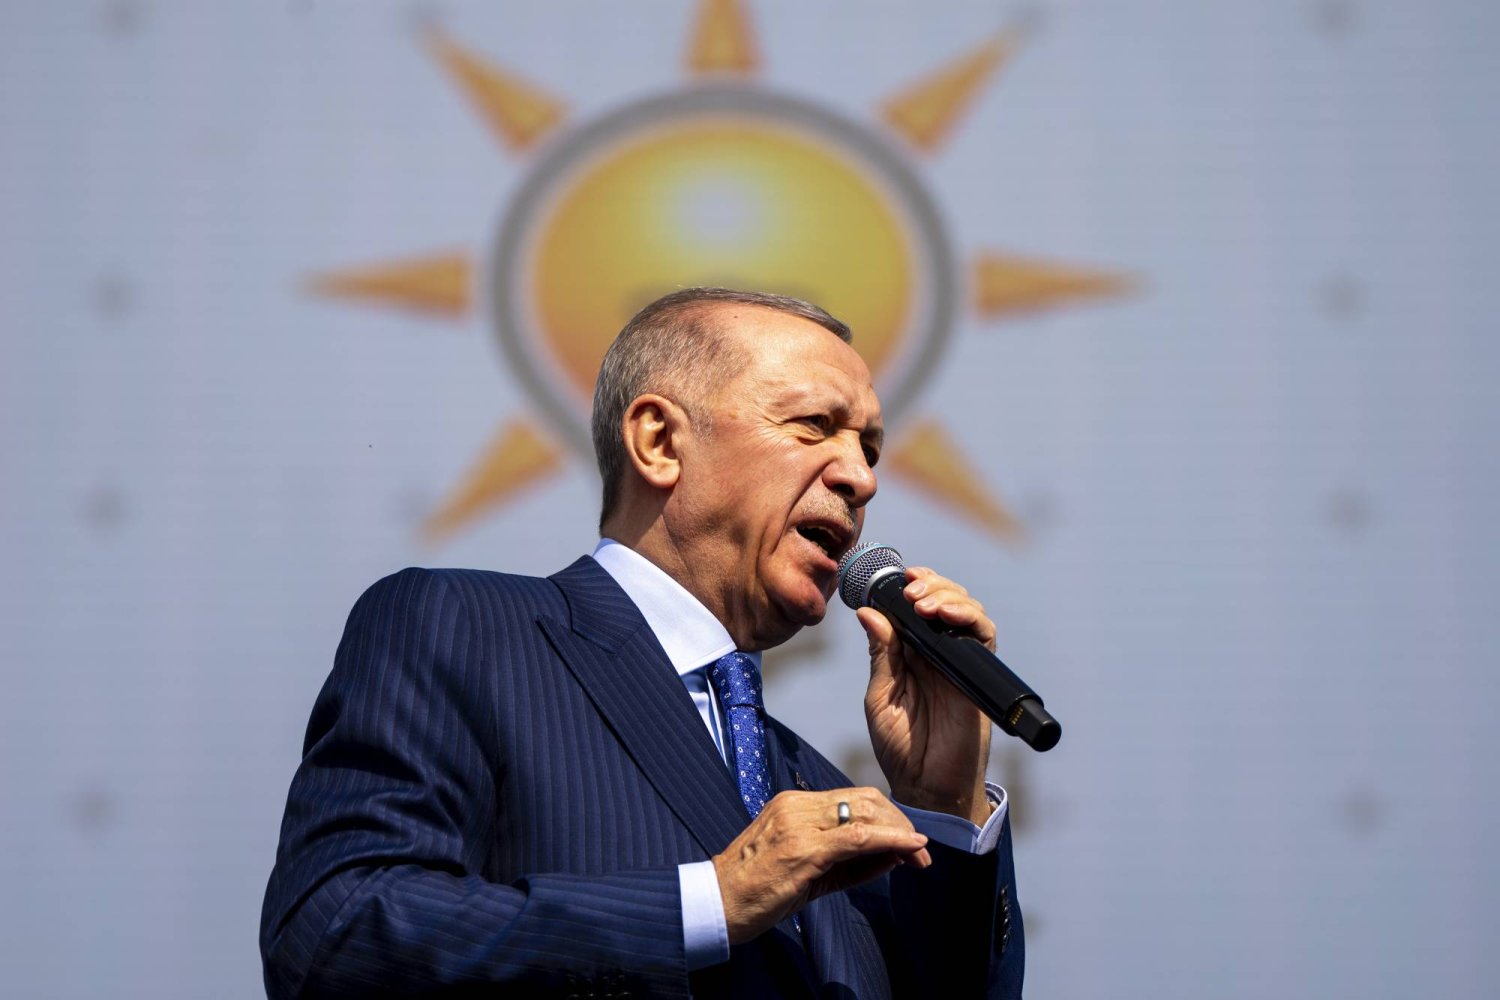 الرئيس التركي رجب طيب إردوغان، يلقي خطابا خلال تجمع انتخابي قبل الانتخابات البلدية على مستوى البلاد، في إسطنبول، الأحد الماضي 24 مارس (أ.ب)